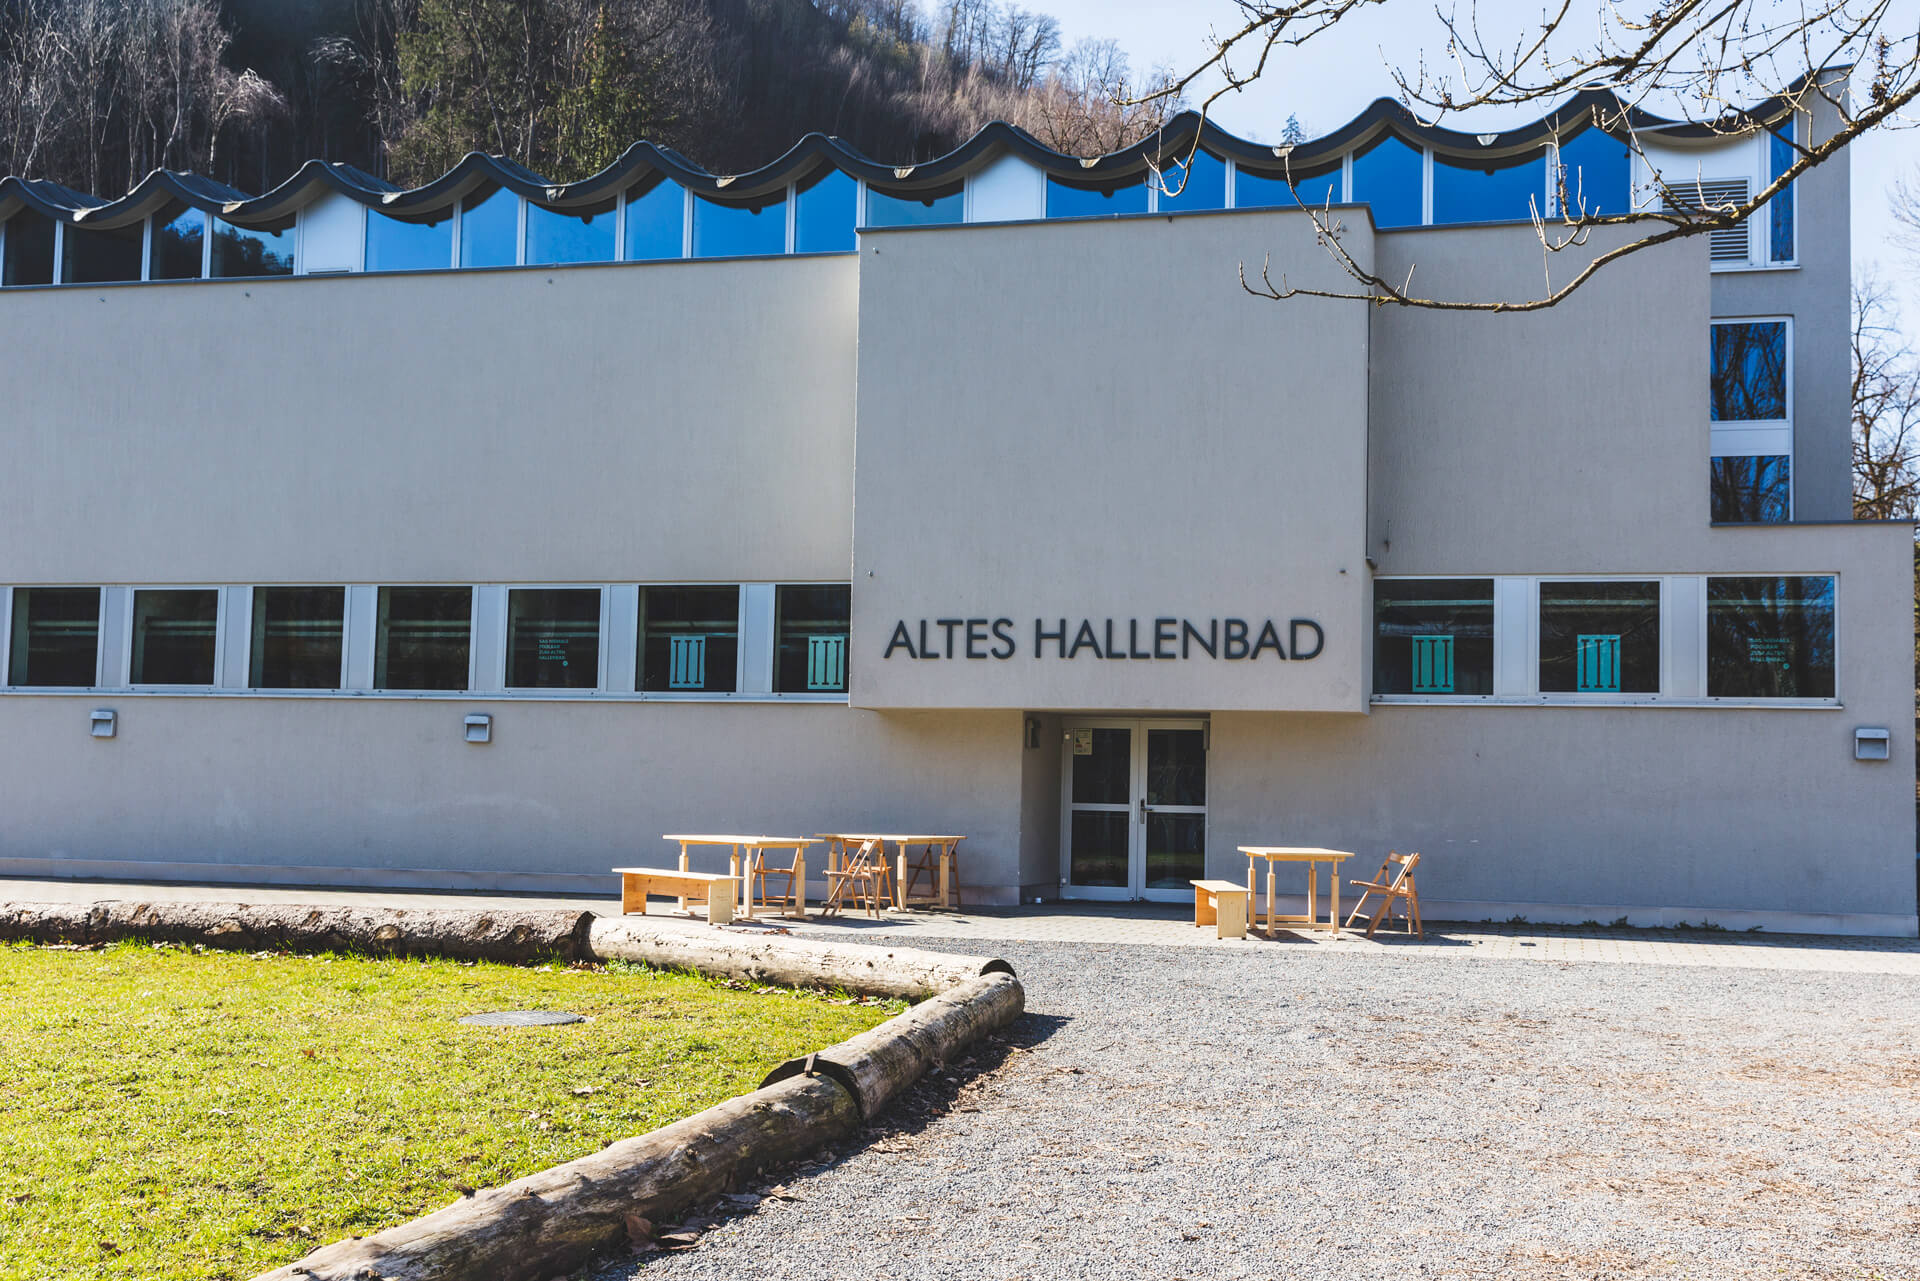 (c) Altes-hallenbad.at